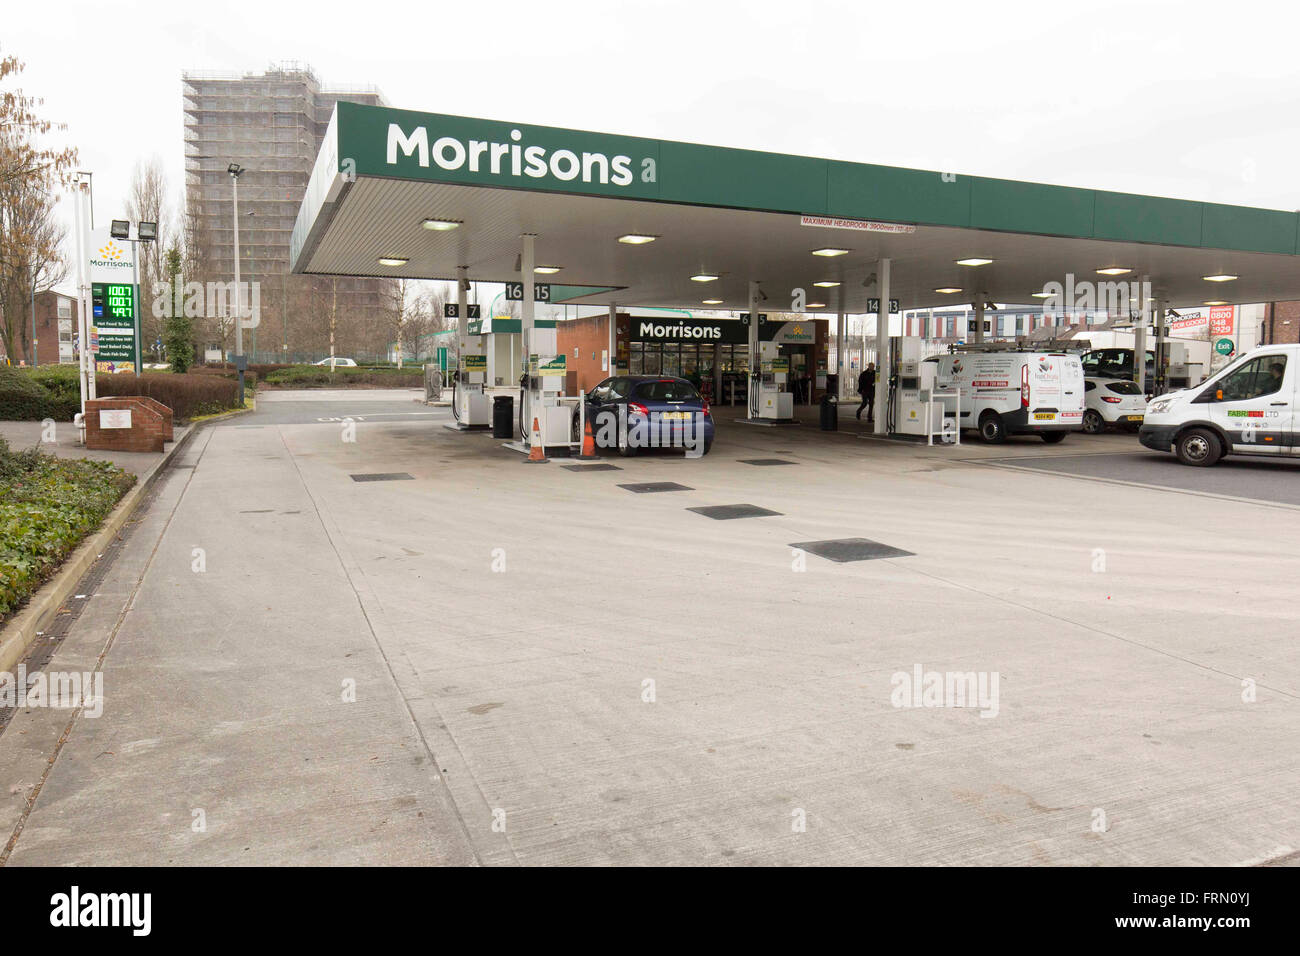 Nouveau regard Morrisons store , Eccles. Station essence photos@unp Banque D'Images